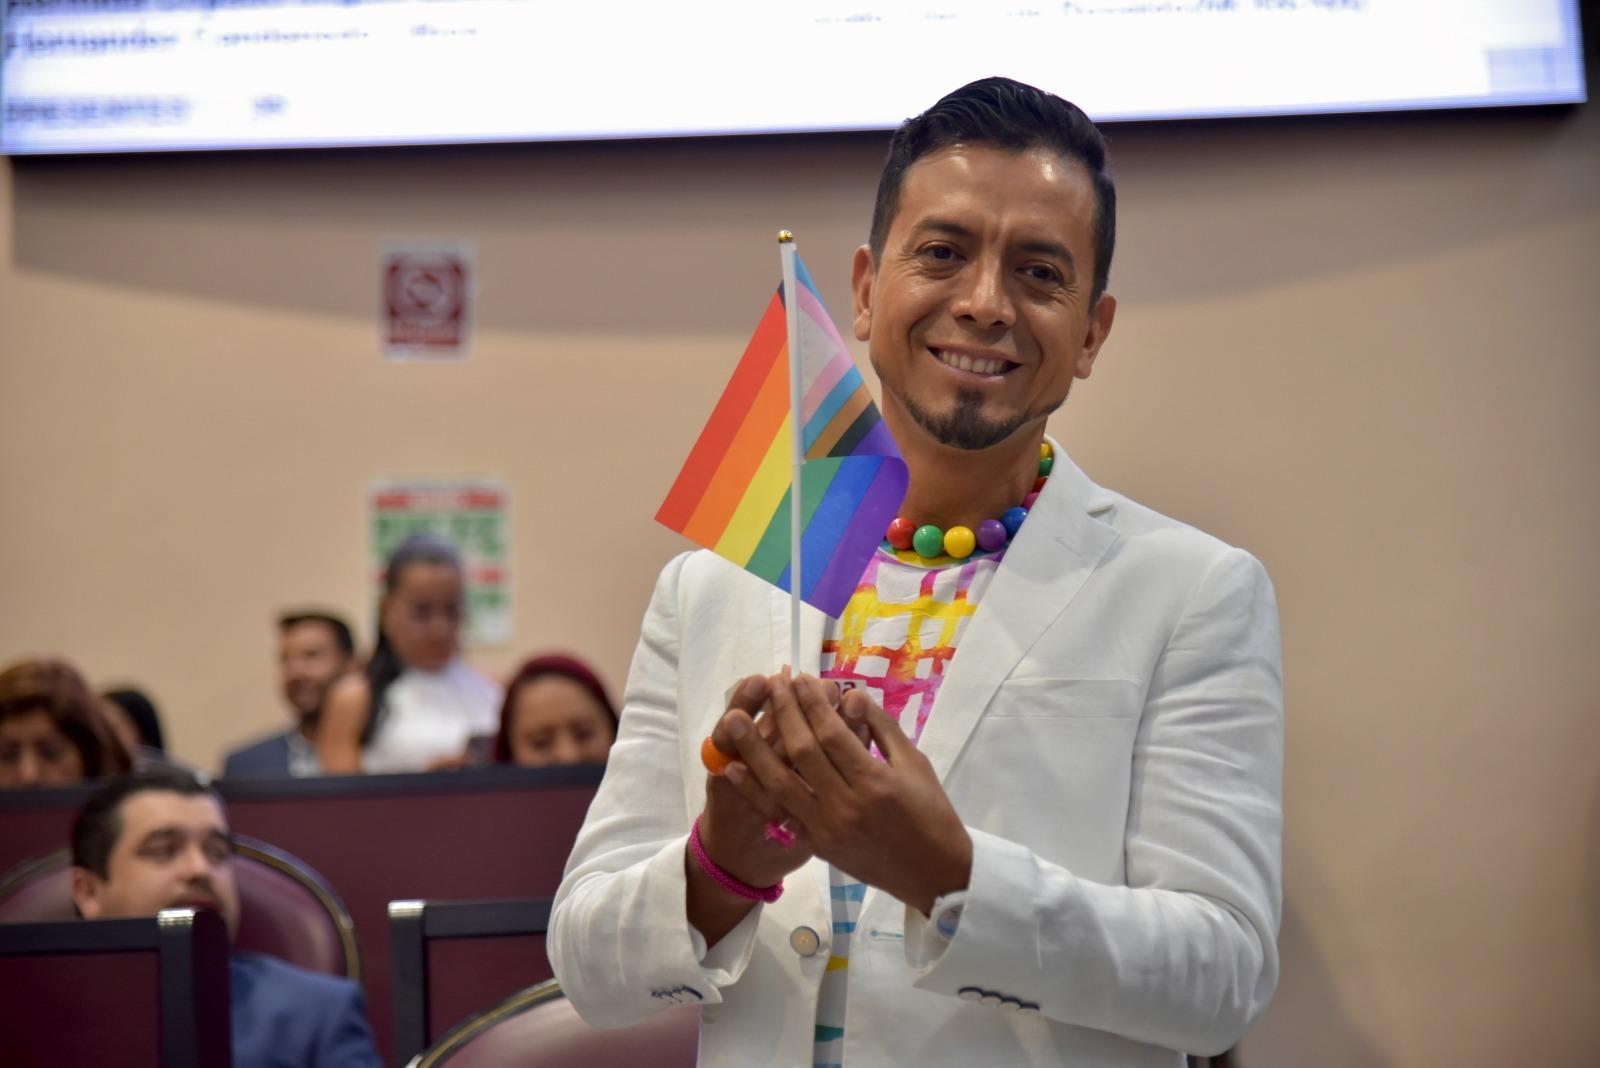 Se pronuncia diputade por continuar lucha contra la homofobia 